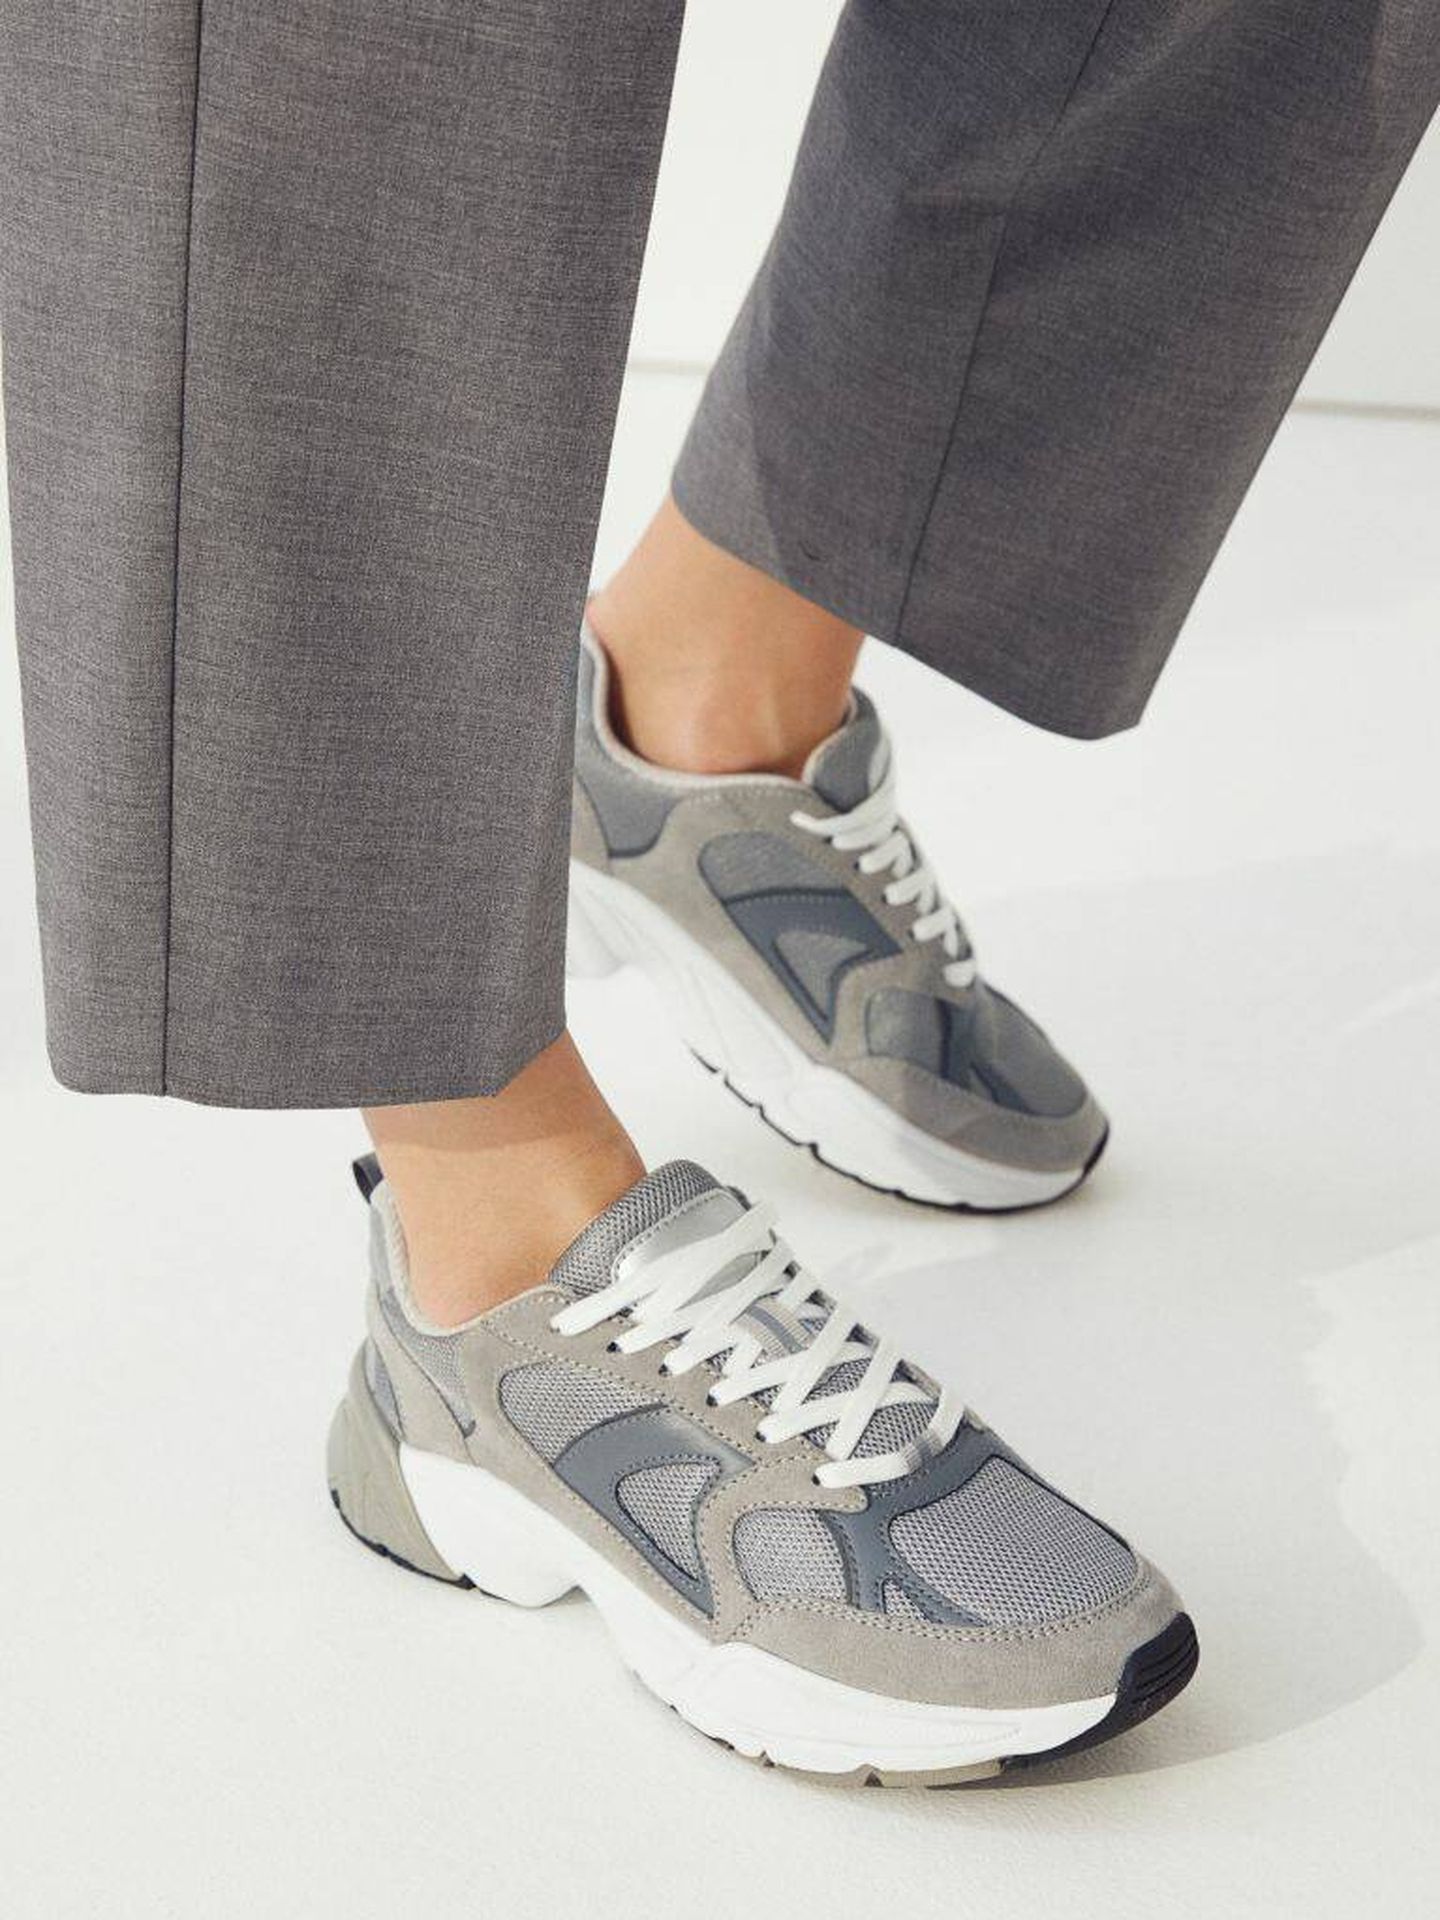 Perca Anécdota nariz H&M tiene las zapatillas deportivas grises de moda en clave low cost